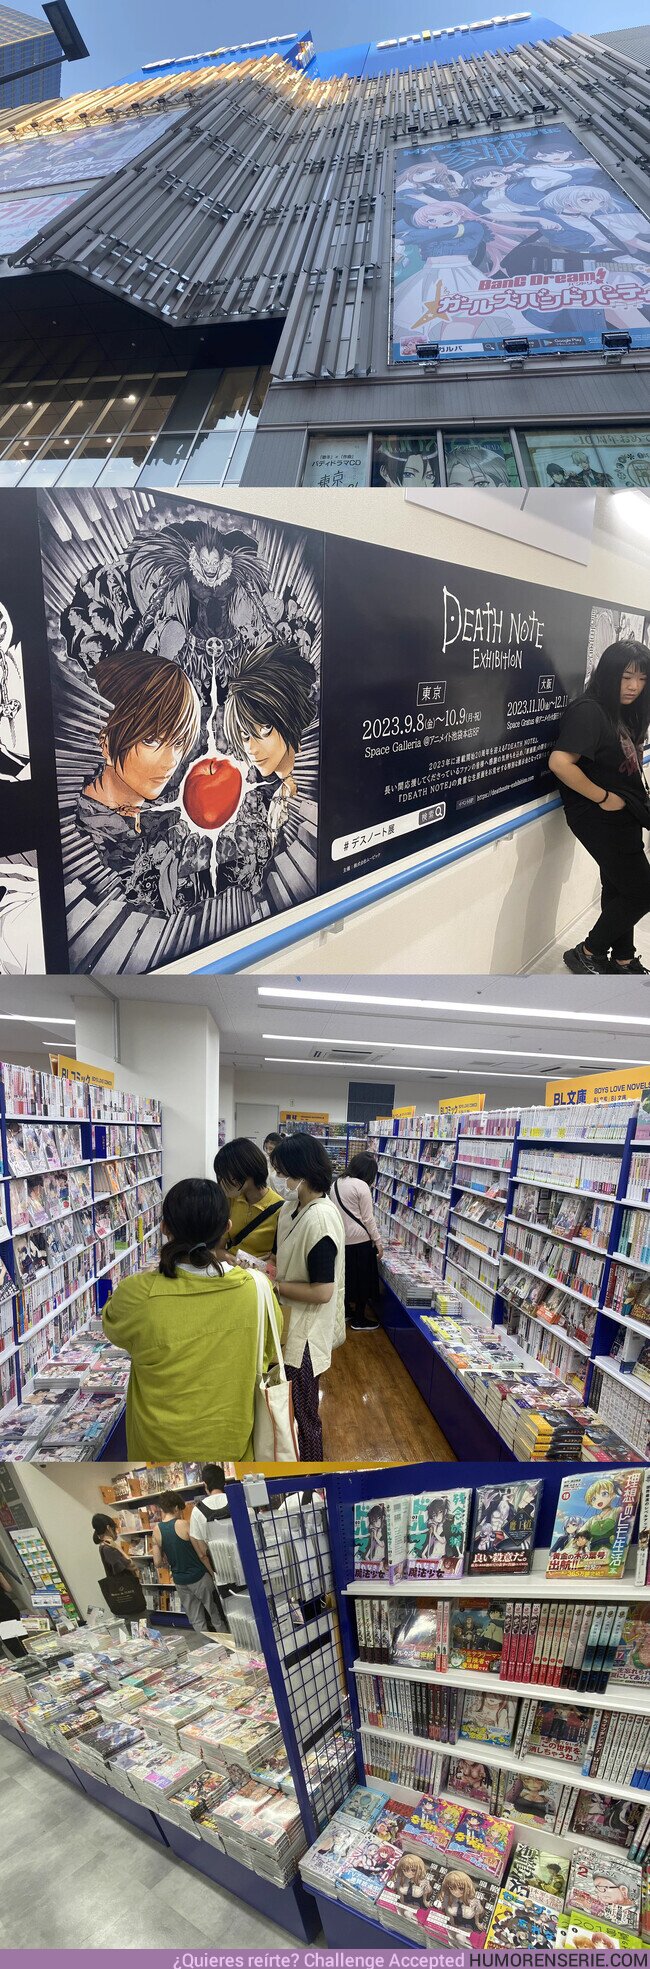 130664 - Ésta es la tienda de manga y anime más grande del mundo. Ocho plantas de merchandising, manga, artbooks, etc...